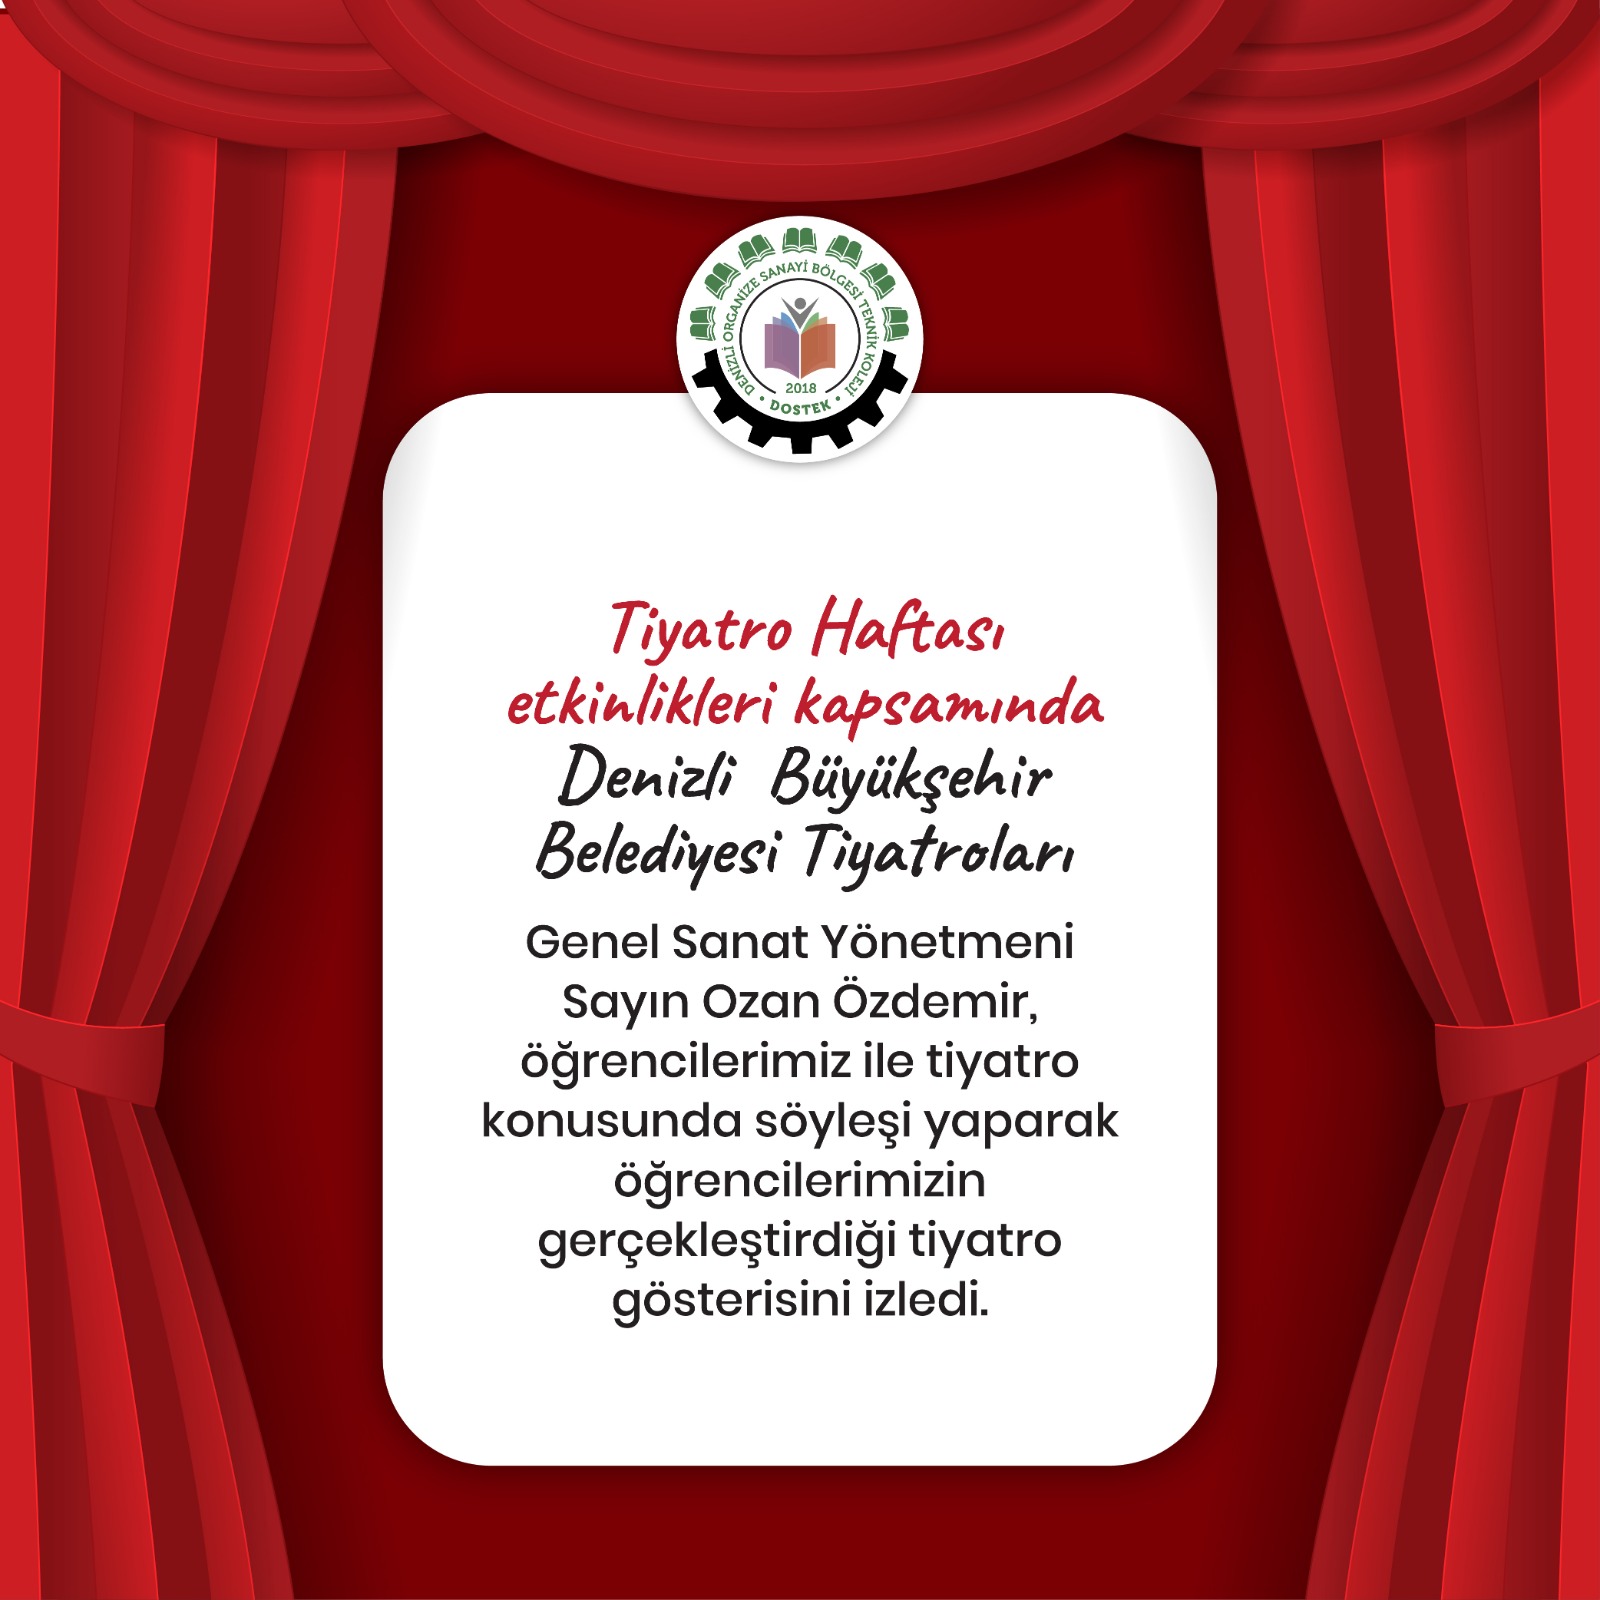 Tiyatro Haftası Etkinlikleri Kapsamında Denizli Büyükşehir Belediyesi Tiyatroları Genel Sanat Yönetmeni Sayın Ozan Özdemir ile birlikteydik